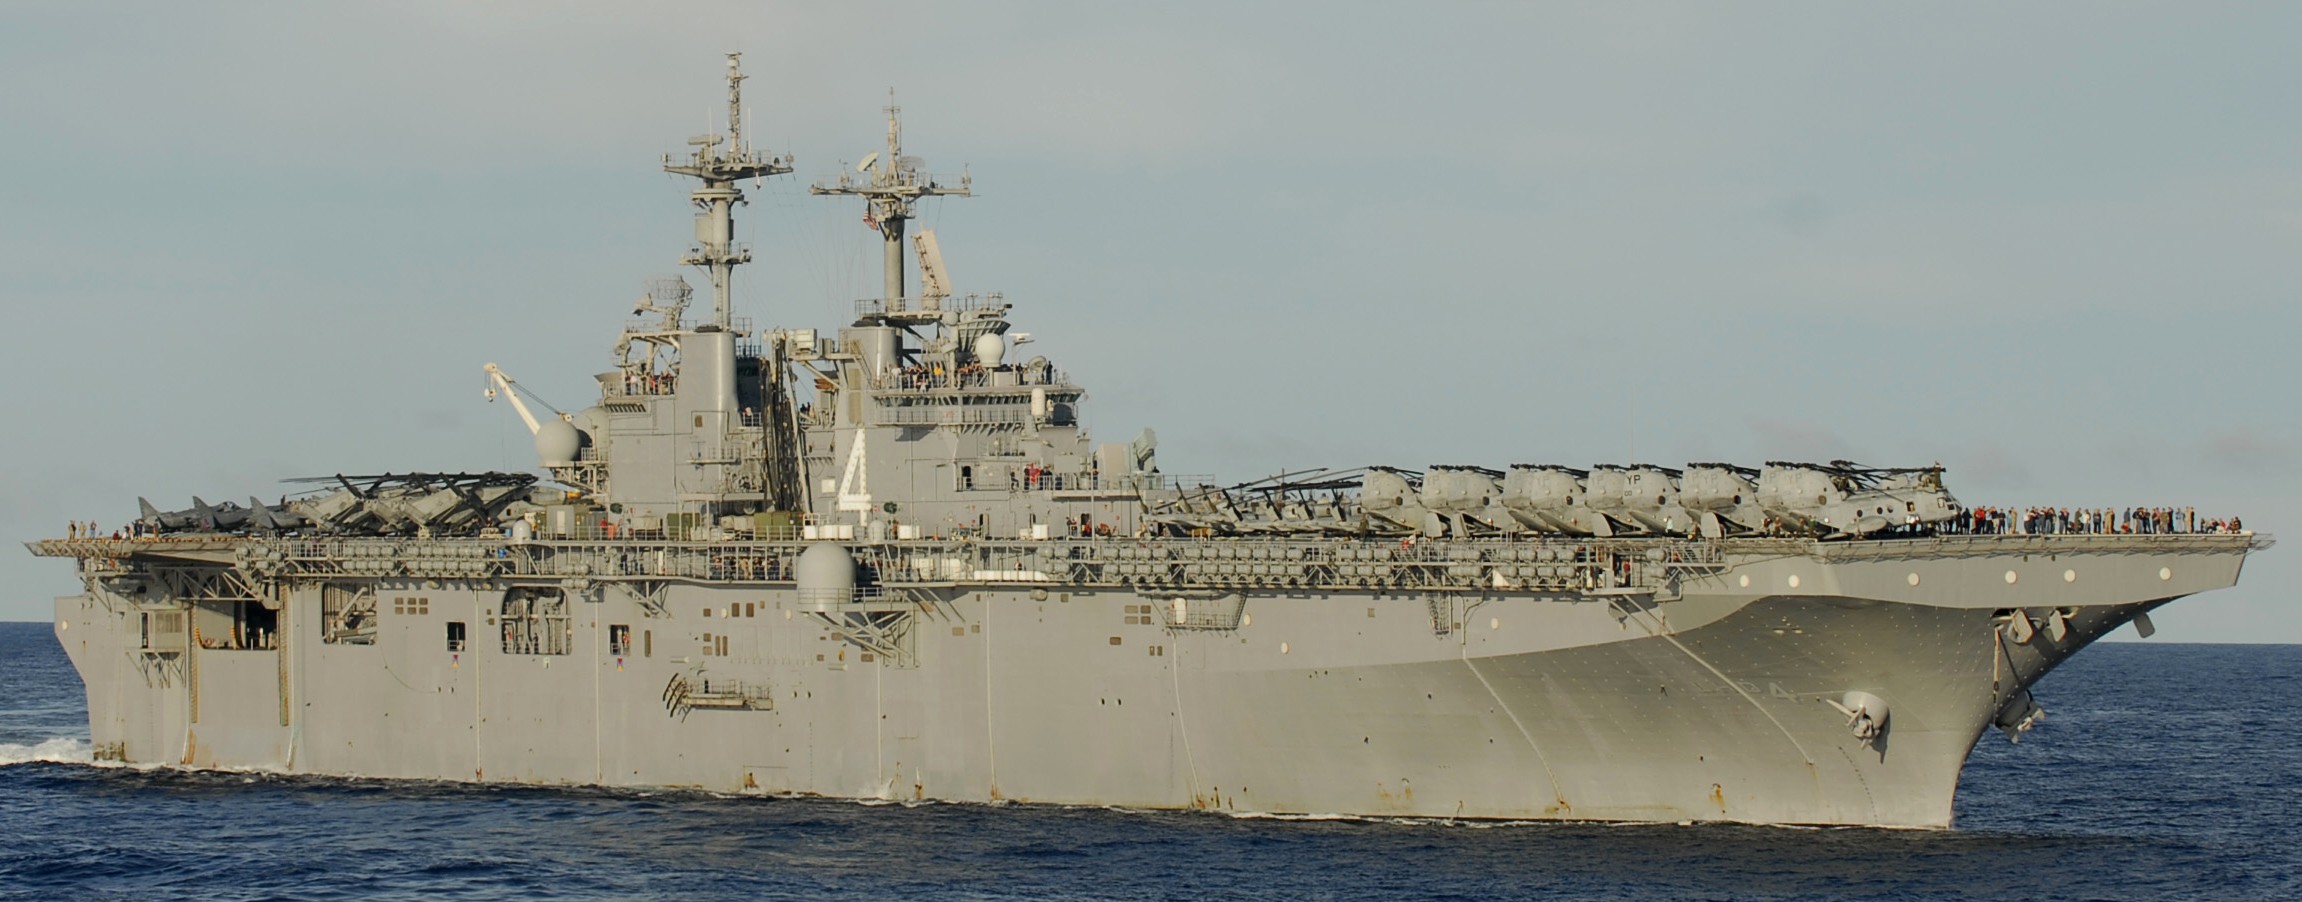 lhd-4 uss boxer wasp class amphibious assault ship dock landing us navy marines hmm-163 pacific ocean 67